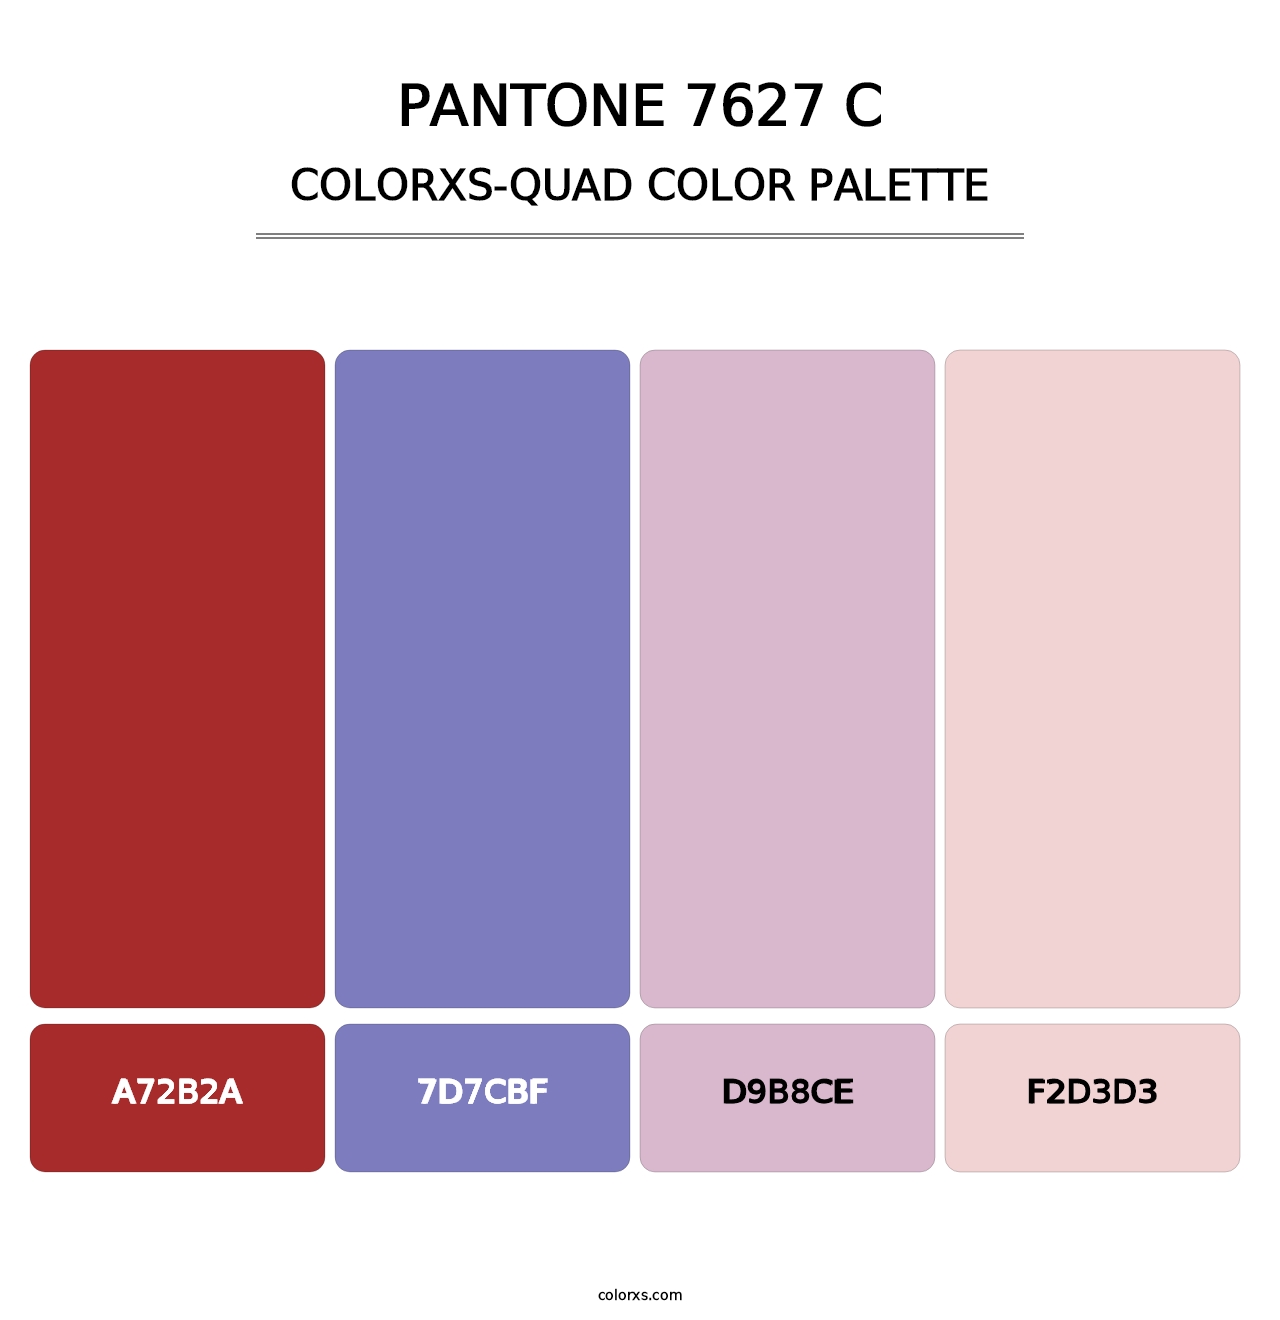 PANTONE 7627 C - Colorxs Quad Palette